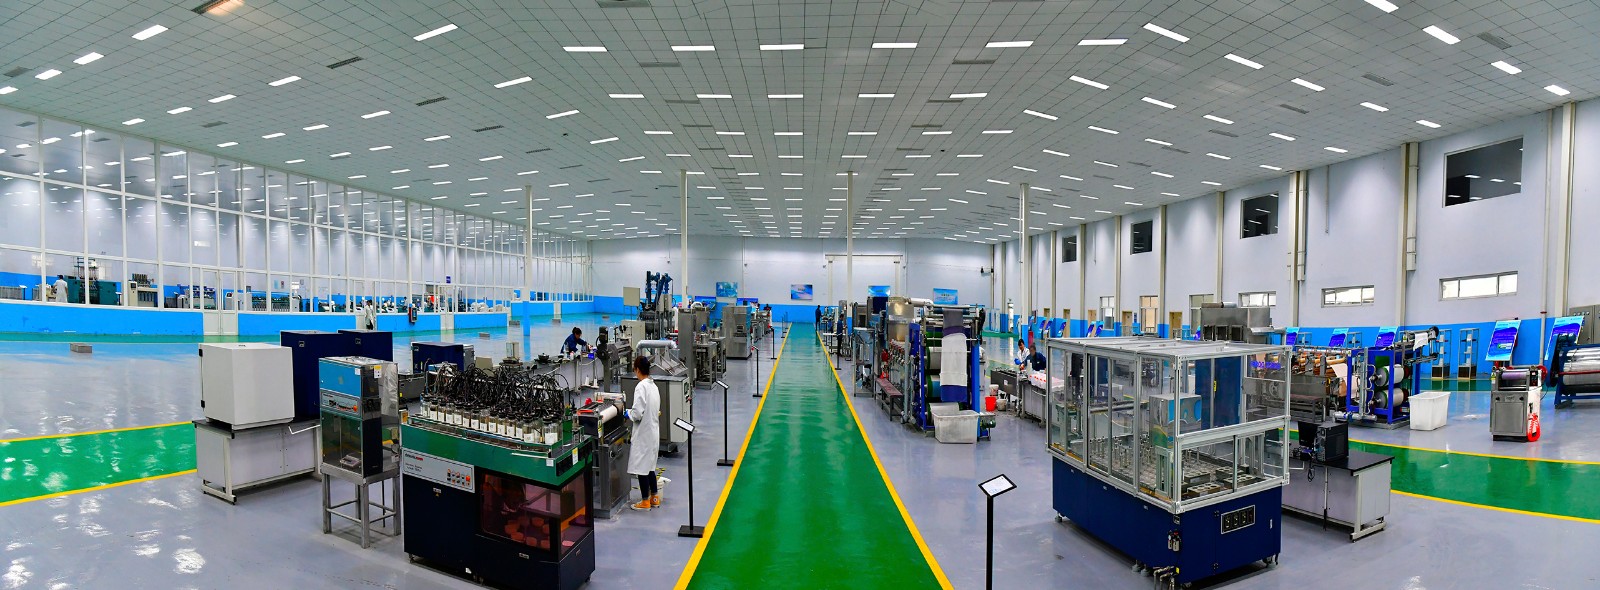 华纺工程技术研究院印染技术研发平台。